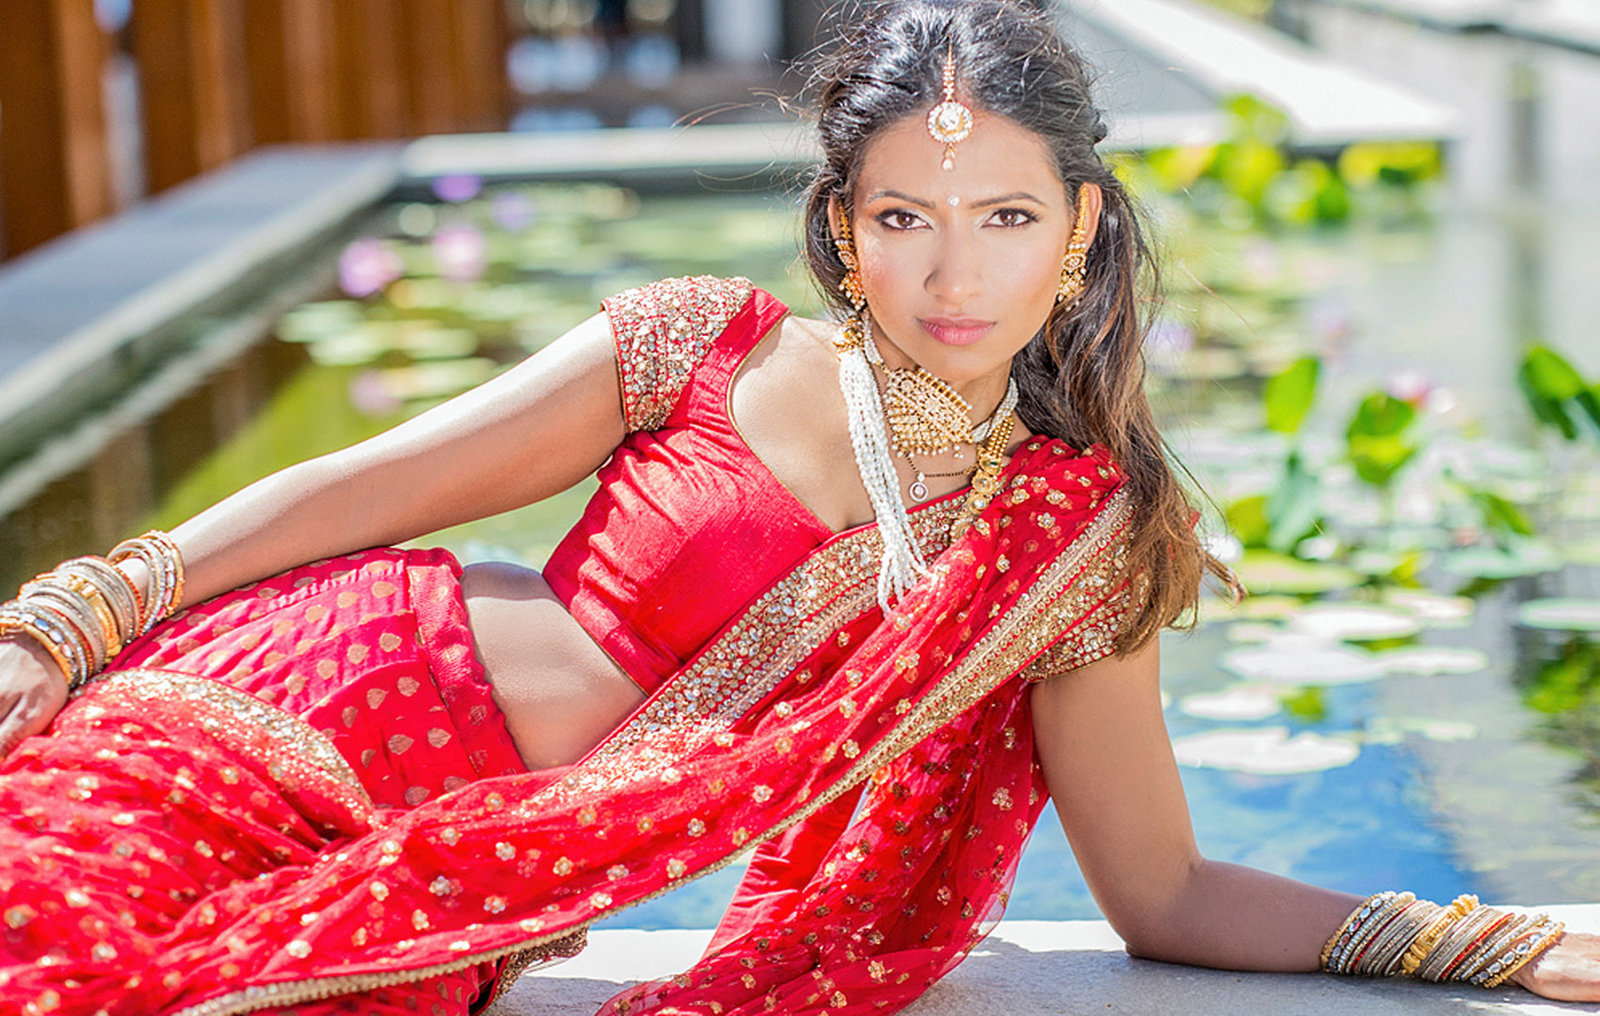 Hawaii Indian wedding photographers  | maui | oahu | kauai | big island